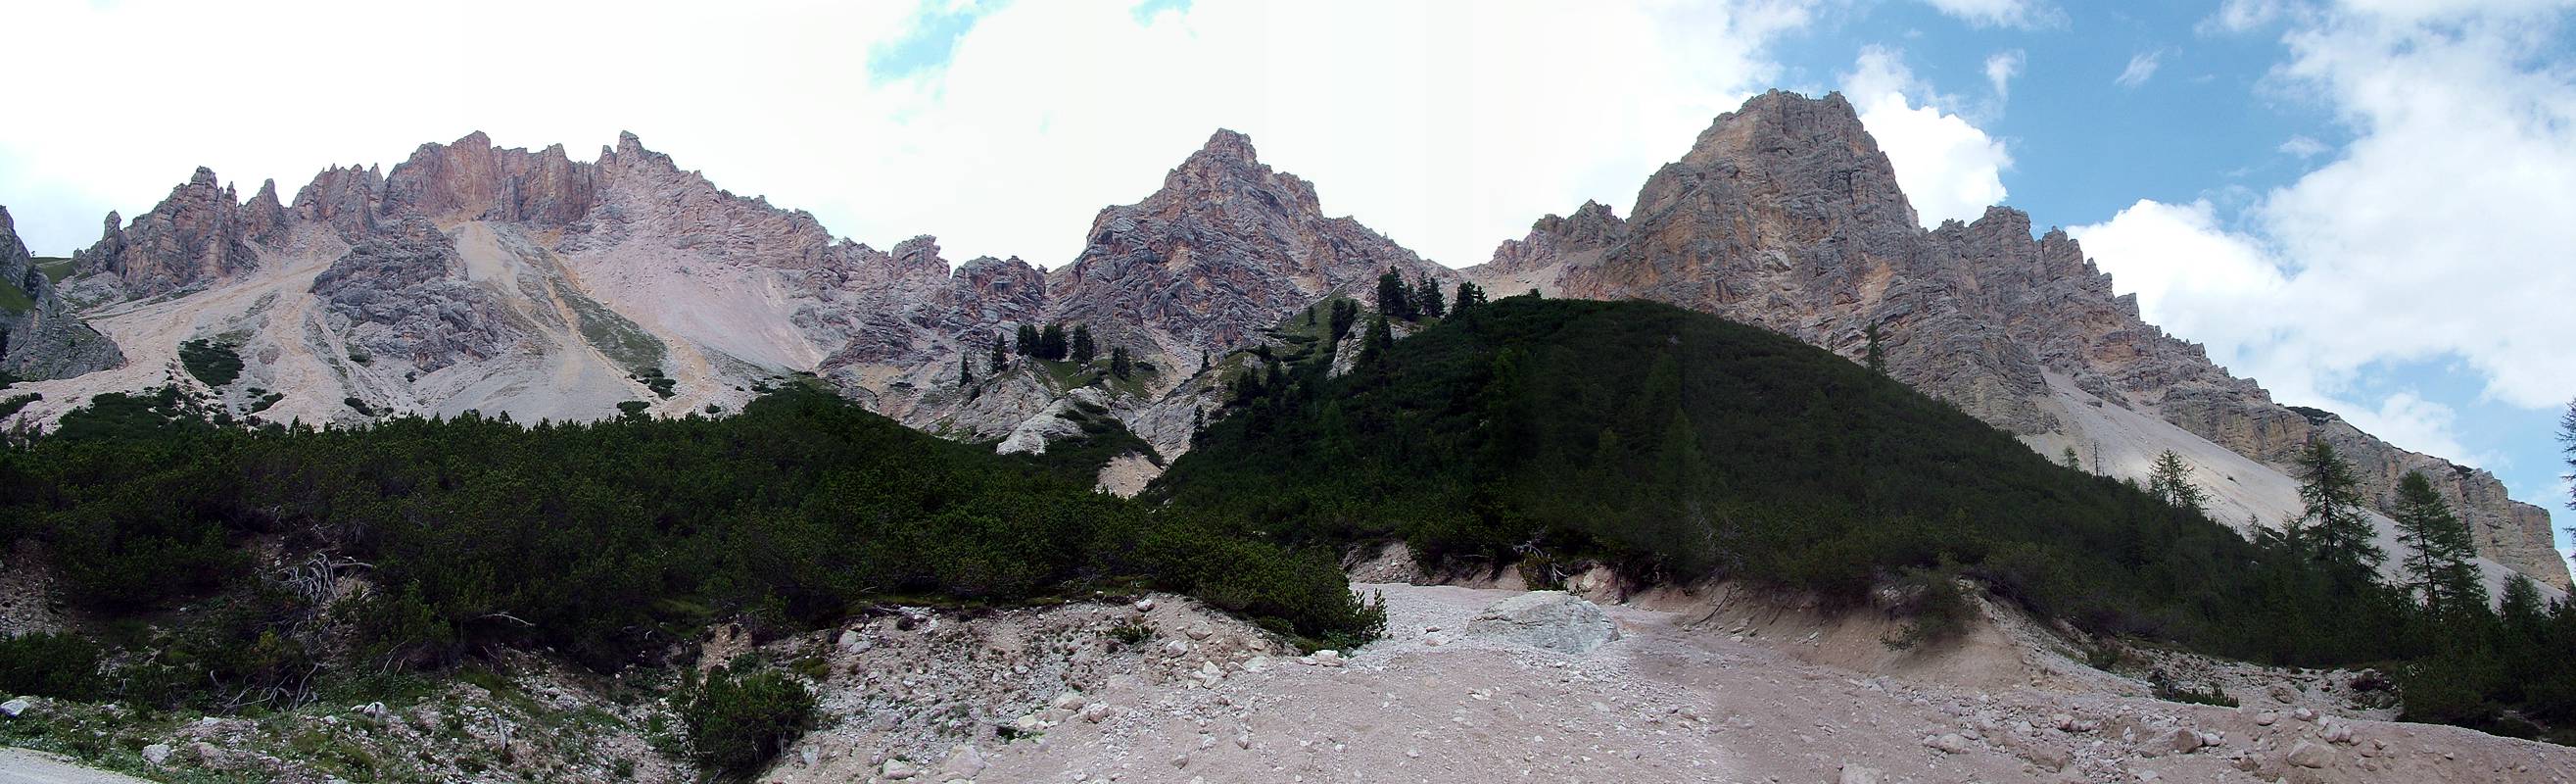 Ein Panoramabild von den Bergen gegenüber unserem Rastplatz [alle namenlos, v.l.n.r. 2450m, 2480m, 2404m).